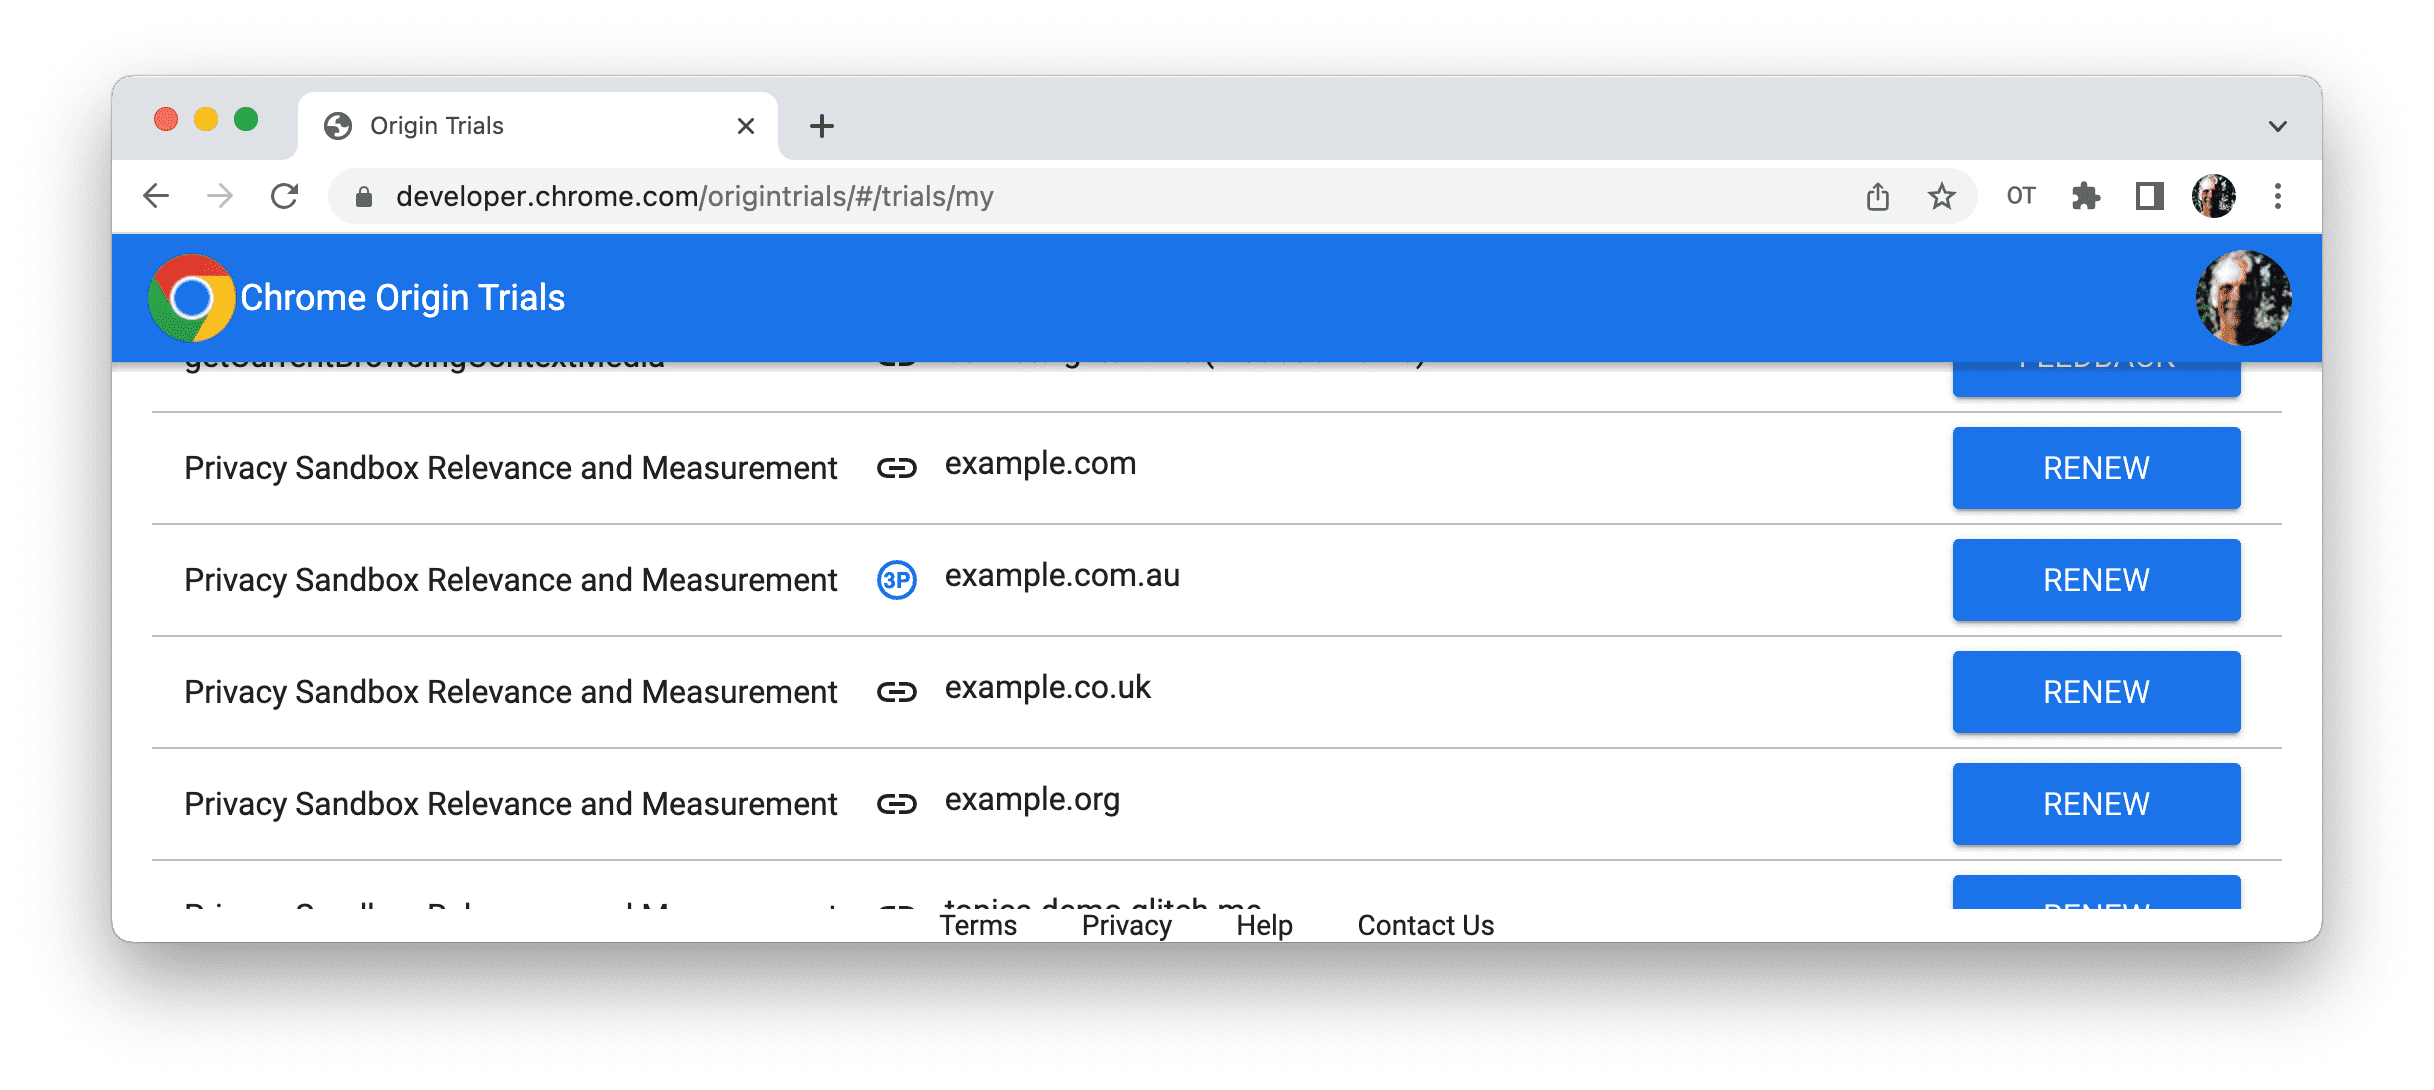 Chrome 源试用“我的注册”页面的屏幕截图，其中显示了“续订”按钮